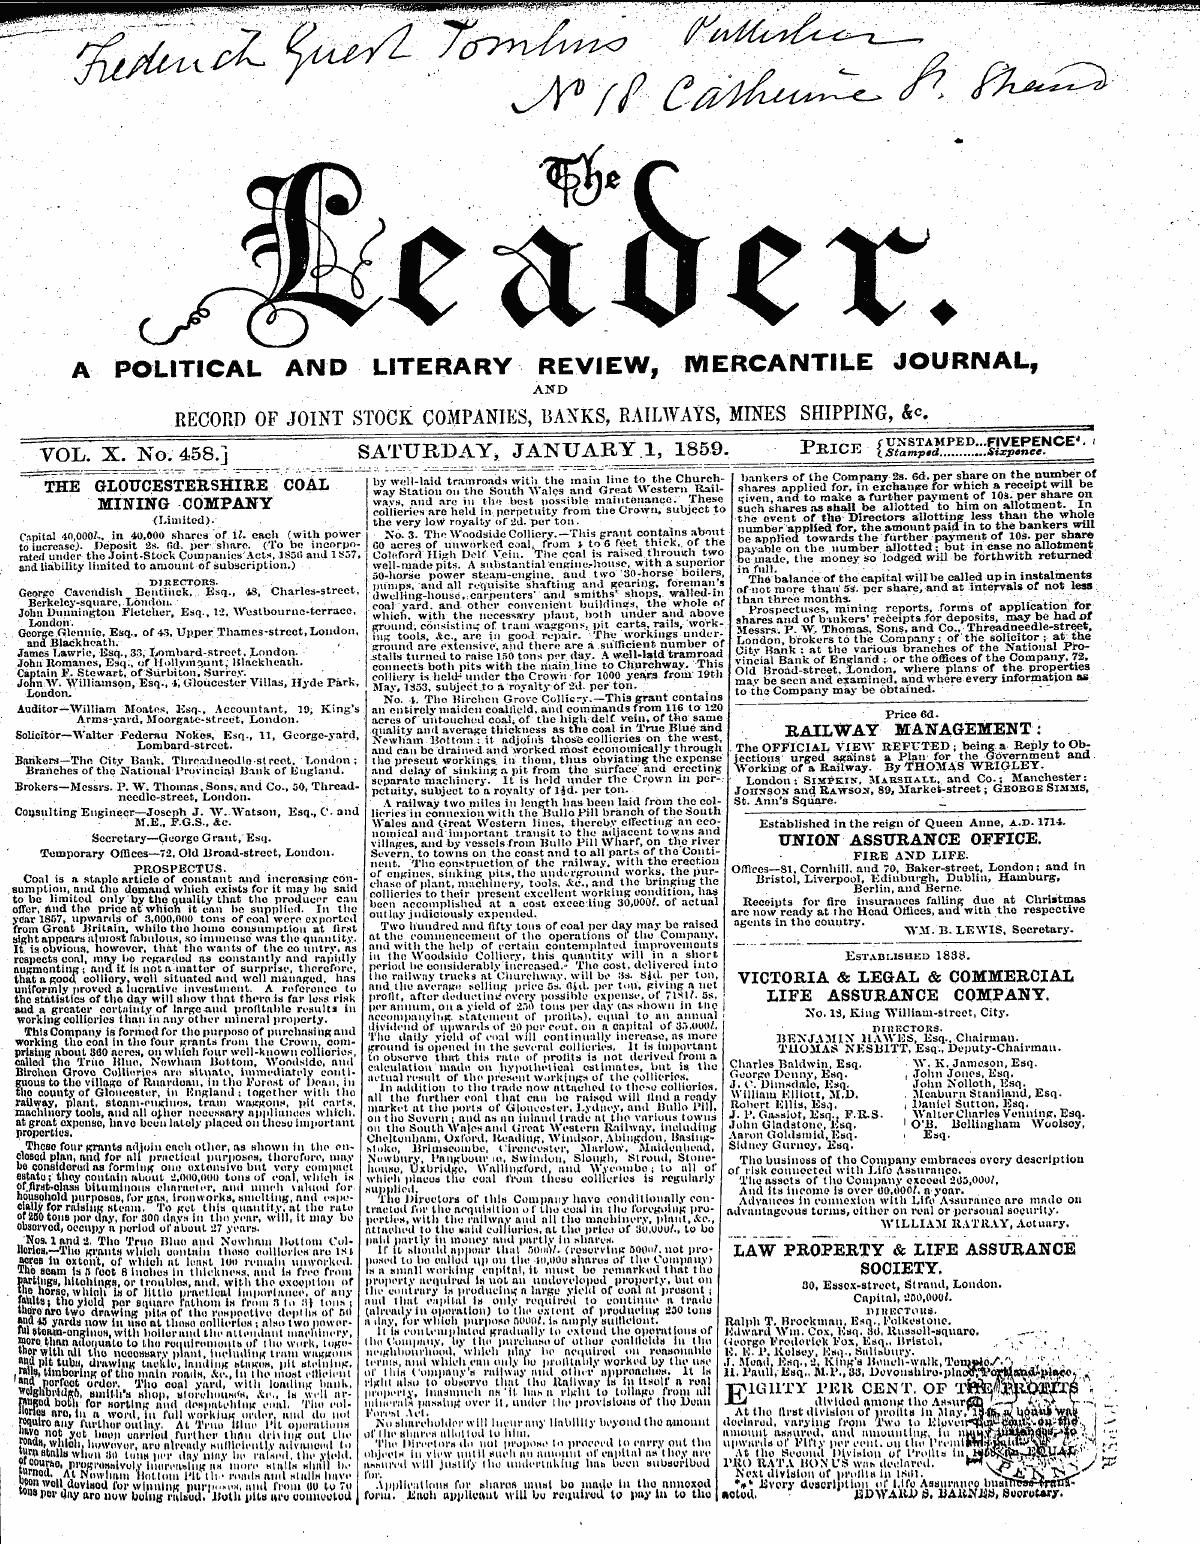 Leader (1850-1860): jS F Y, 2nd edition - ¦ ¦ ¦ ' : ¦ ' ¦ ; " - ^ L ¦ ¦ ' ¦ ¦ '*V ...